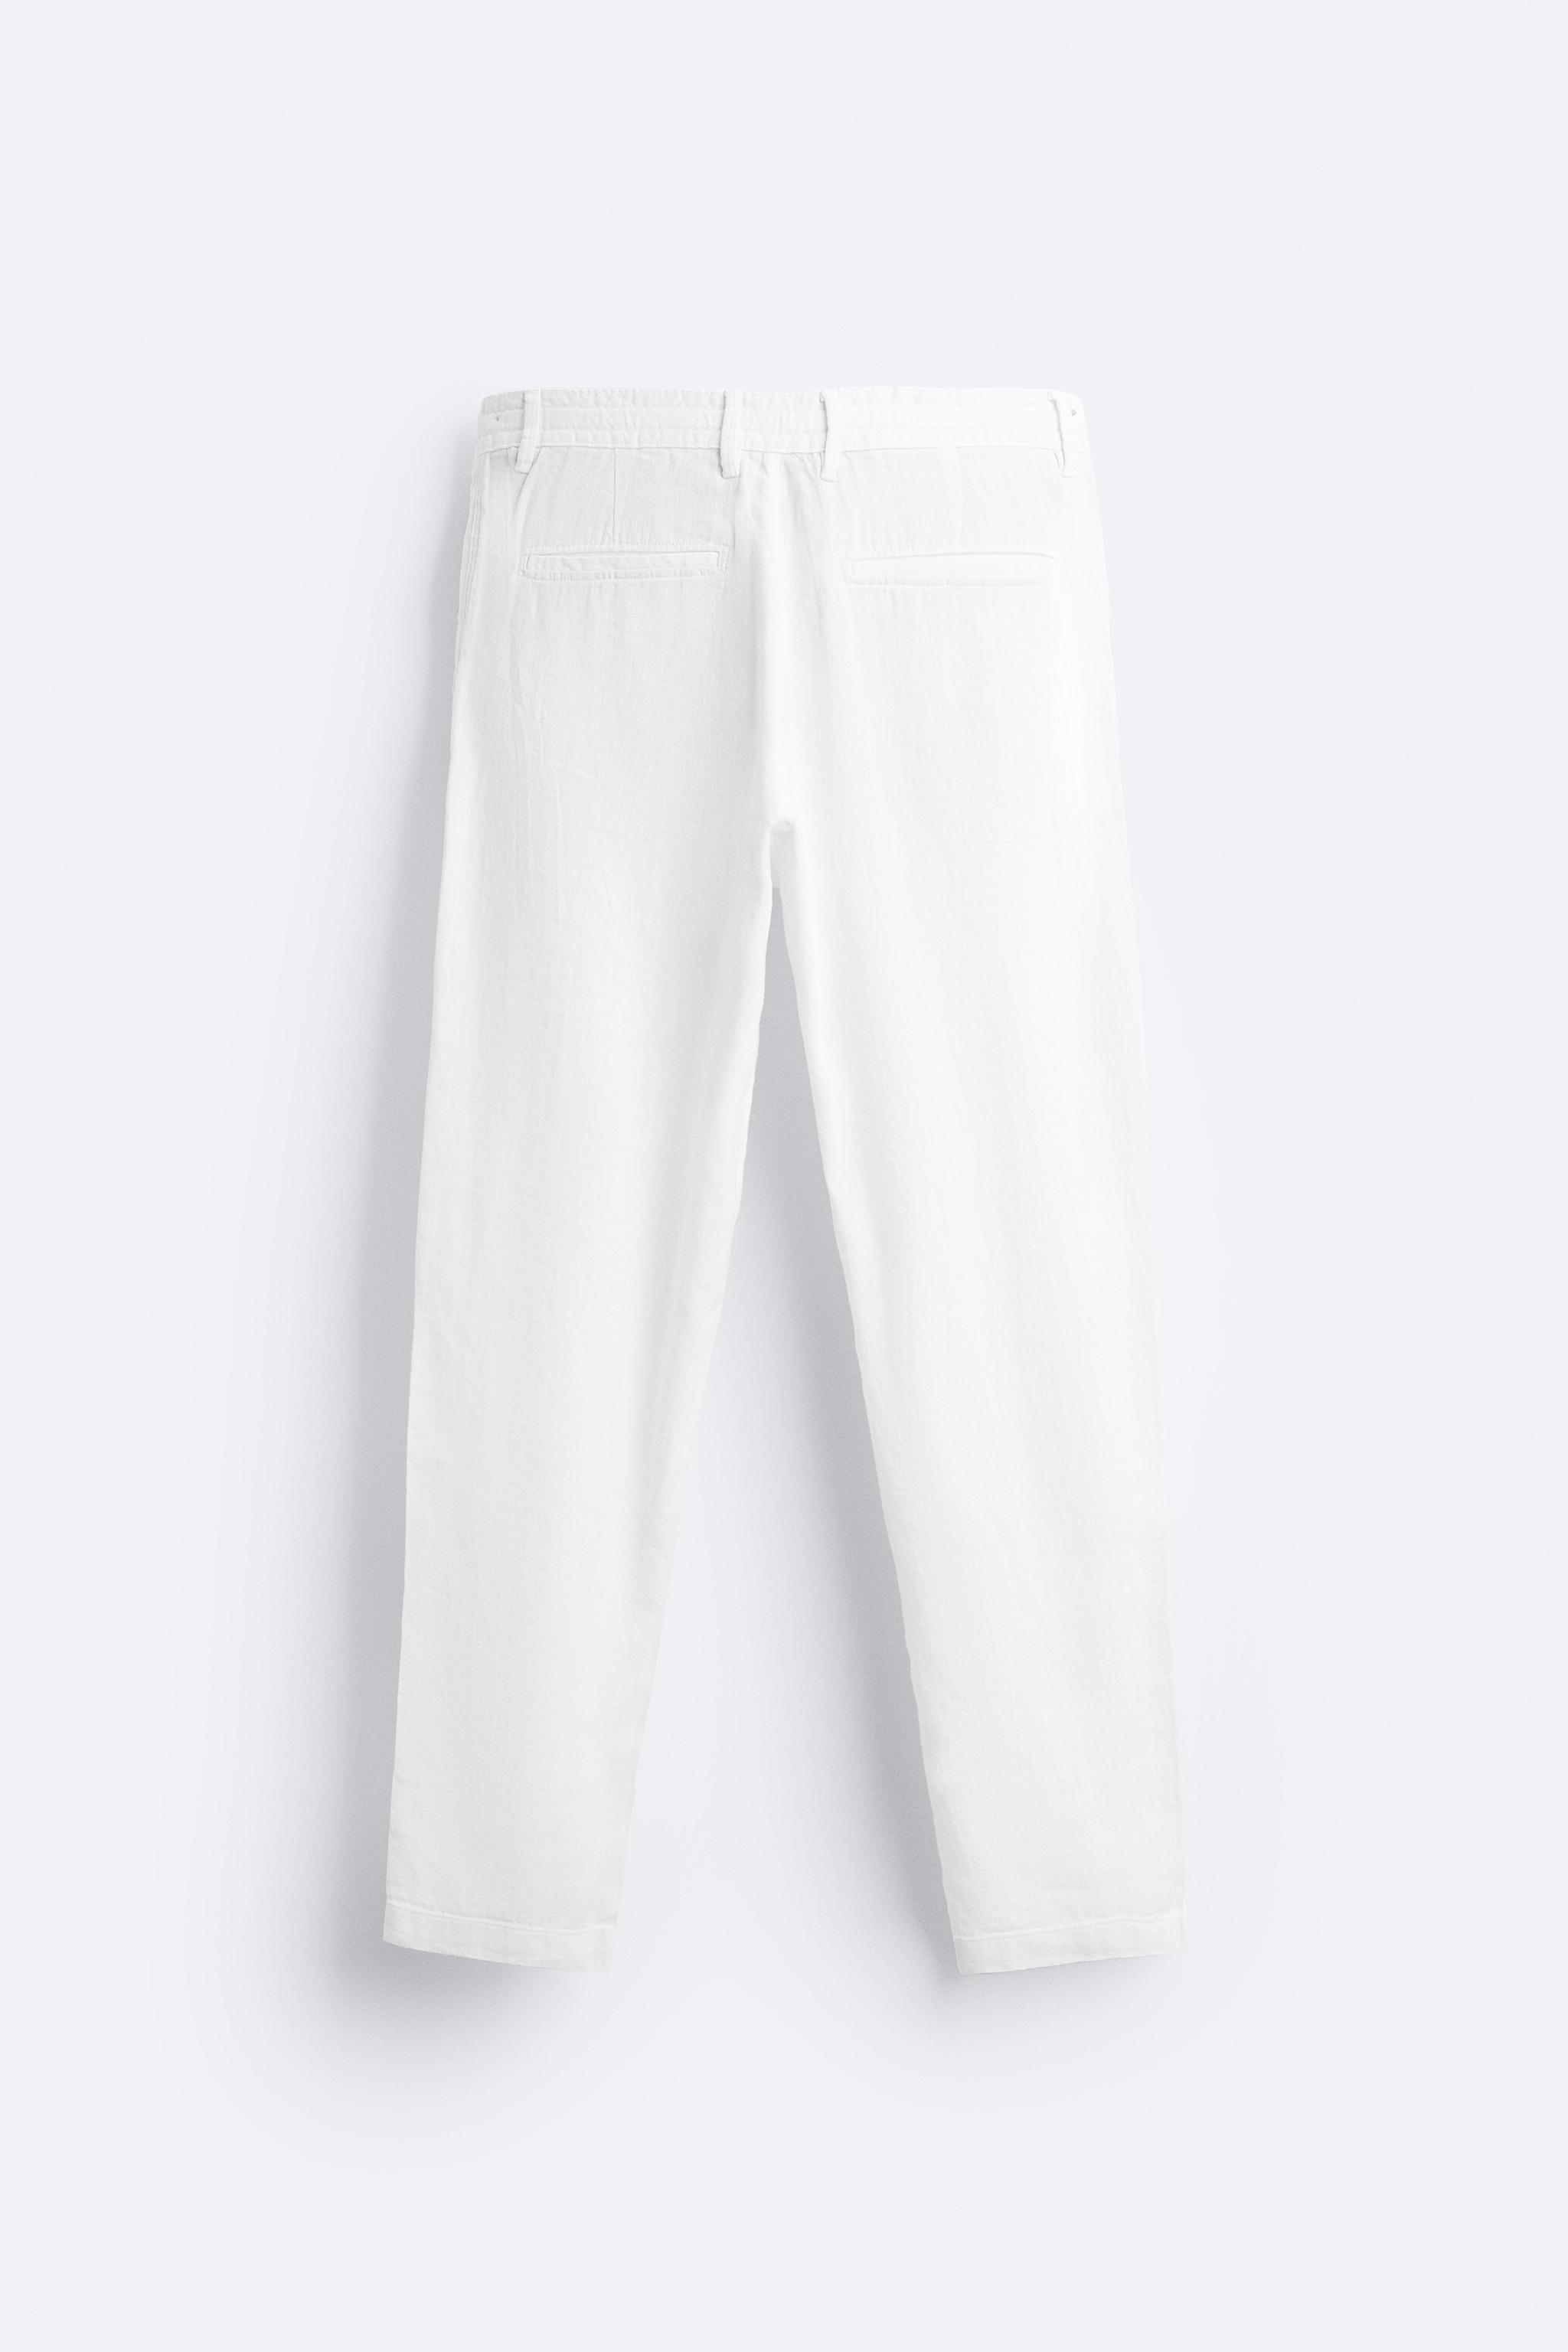 棉麻混纺裤子- 白色| ZARA